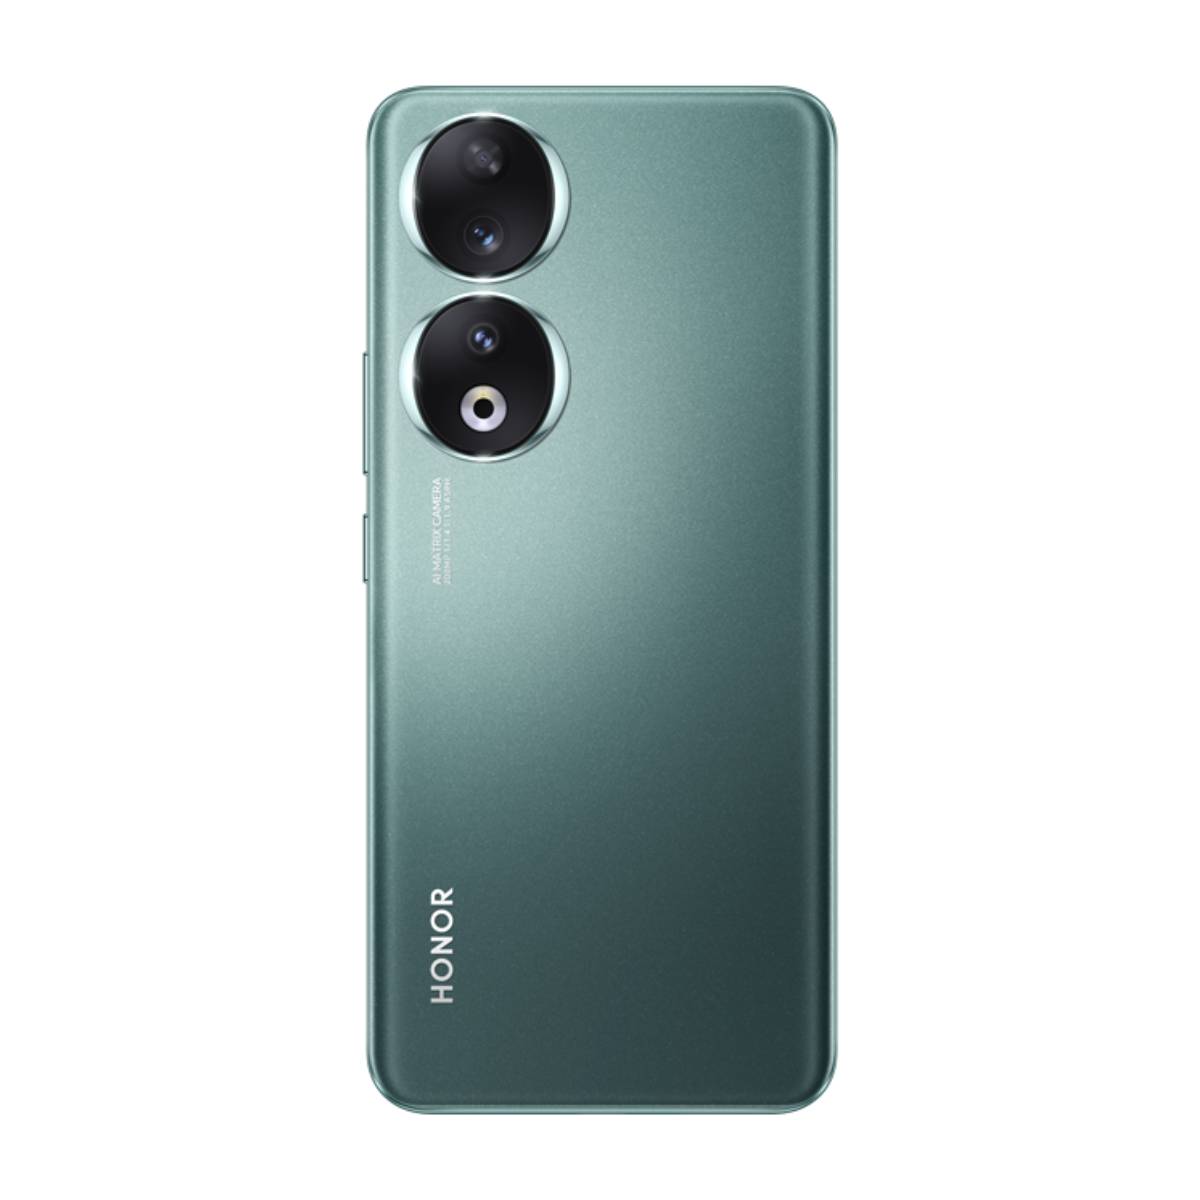 Claro Guatemala on X: ¡Tu nuevo Honor ya disponible en nuestras tiendas!  🤩📱 Adquirí el nuevo Honor 90 hoy mismo y empezá a disfrutar de tu nuevo  smartphone de 512GB🥳  /